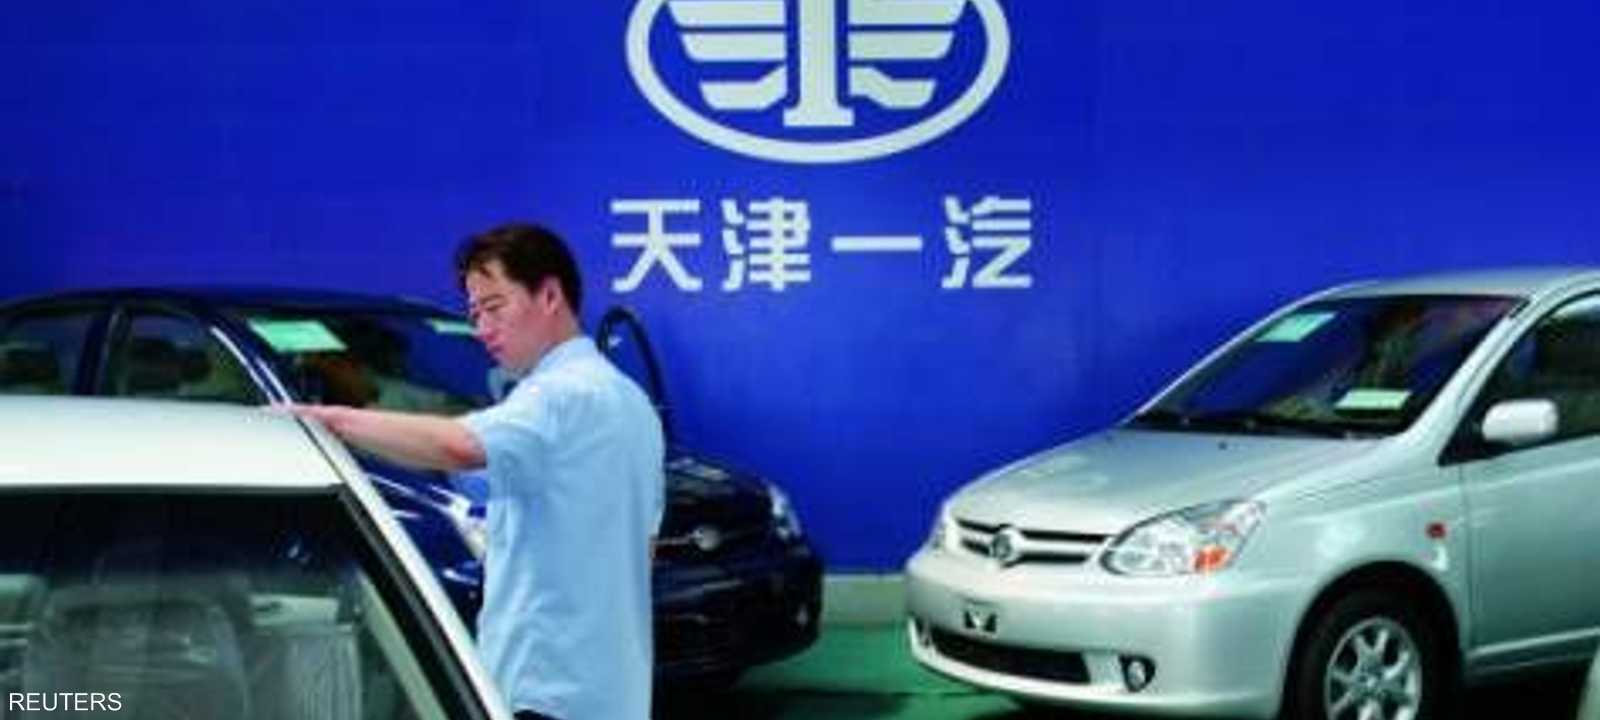 شركة فاو الصينية للسيارات